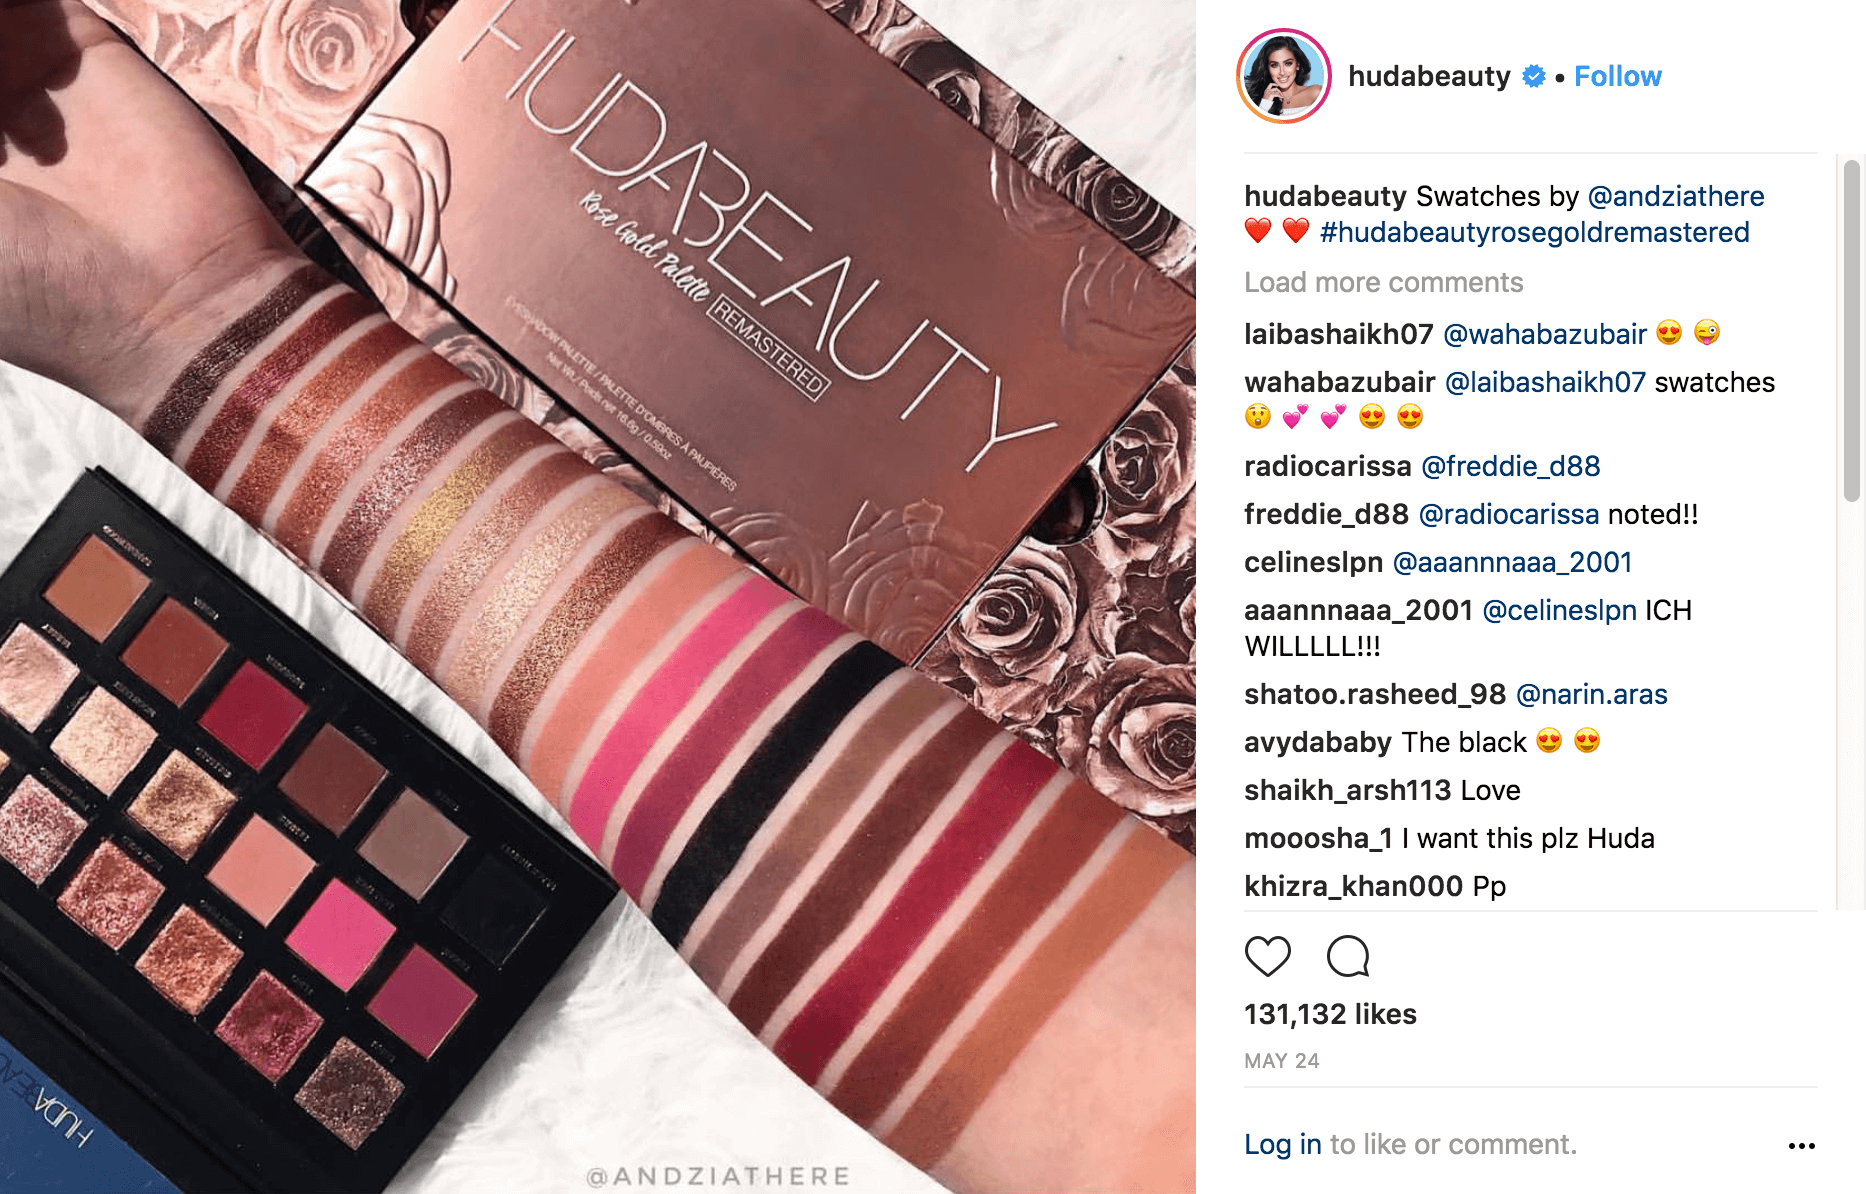 Una publicación realizada por la cuenta de Instagram hudabeauty en la que se muestra una muestra de maquillaje.